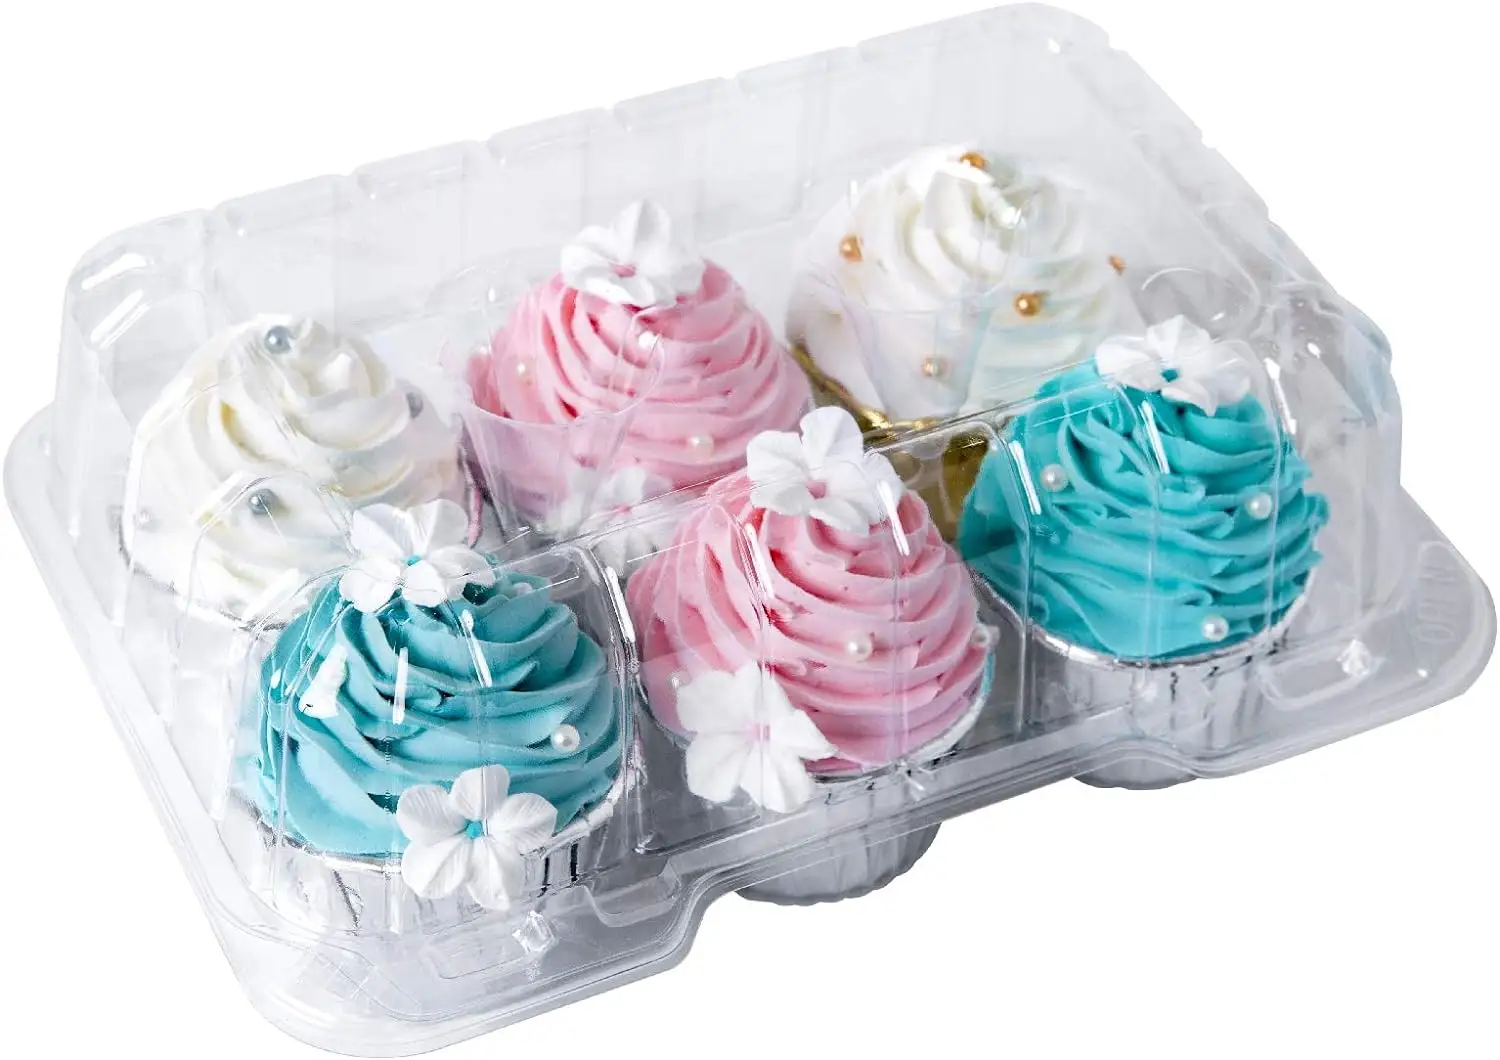 사용자 정의 1 2 4 6 12 컵케익 캐리어 홀더 투명 플라스틱 물집 클램쉘 용기 디저트 머핀 포장 상자 돔 뚜껑